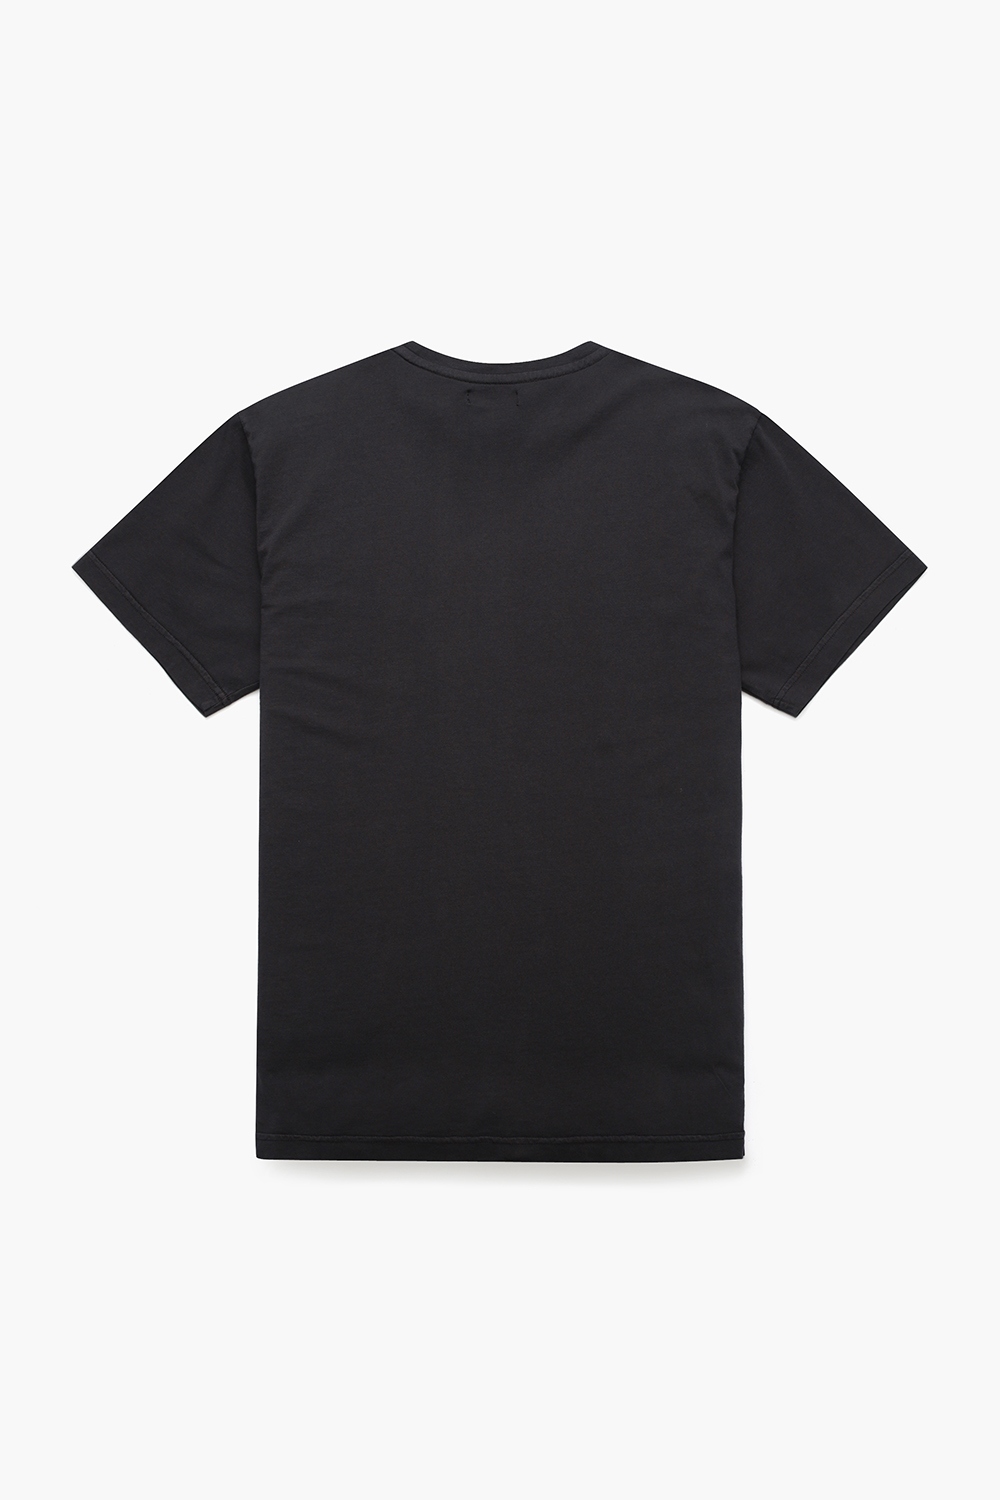 코튼 라운드 반소매 티셔츠 블랙 RE2SMBAPO510R99